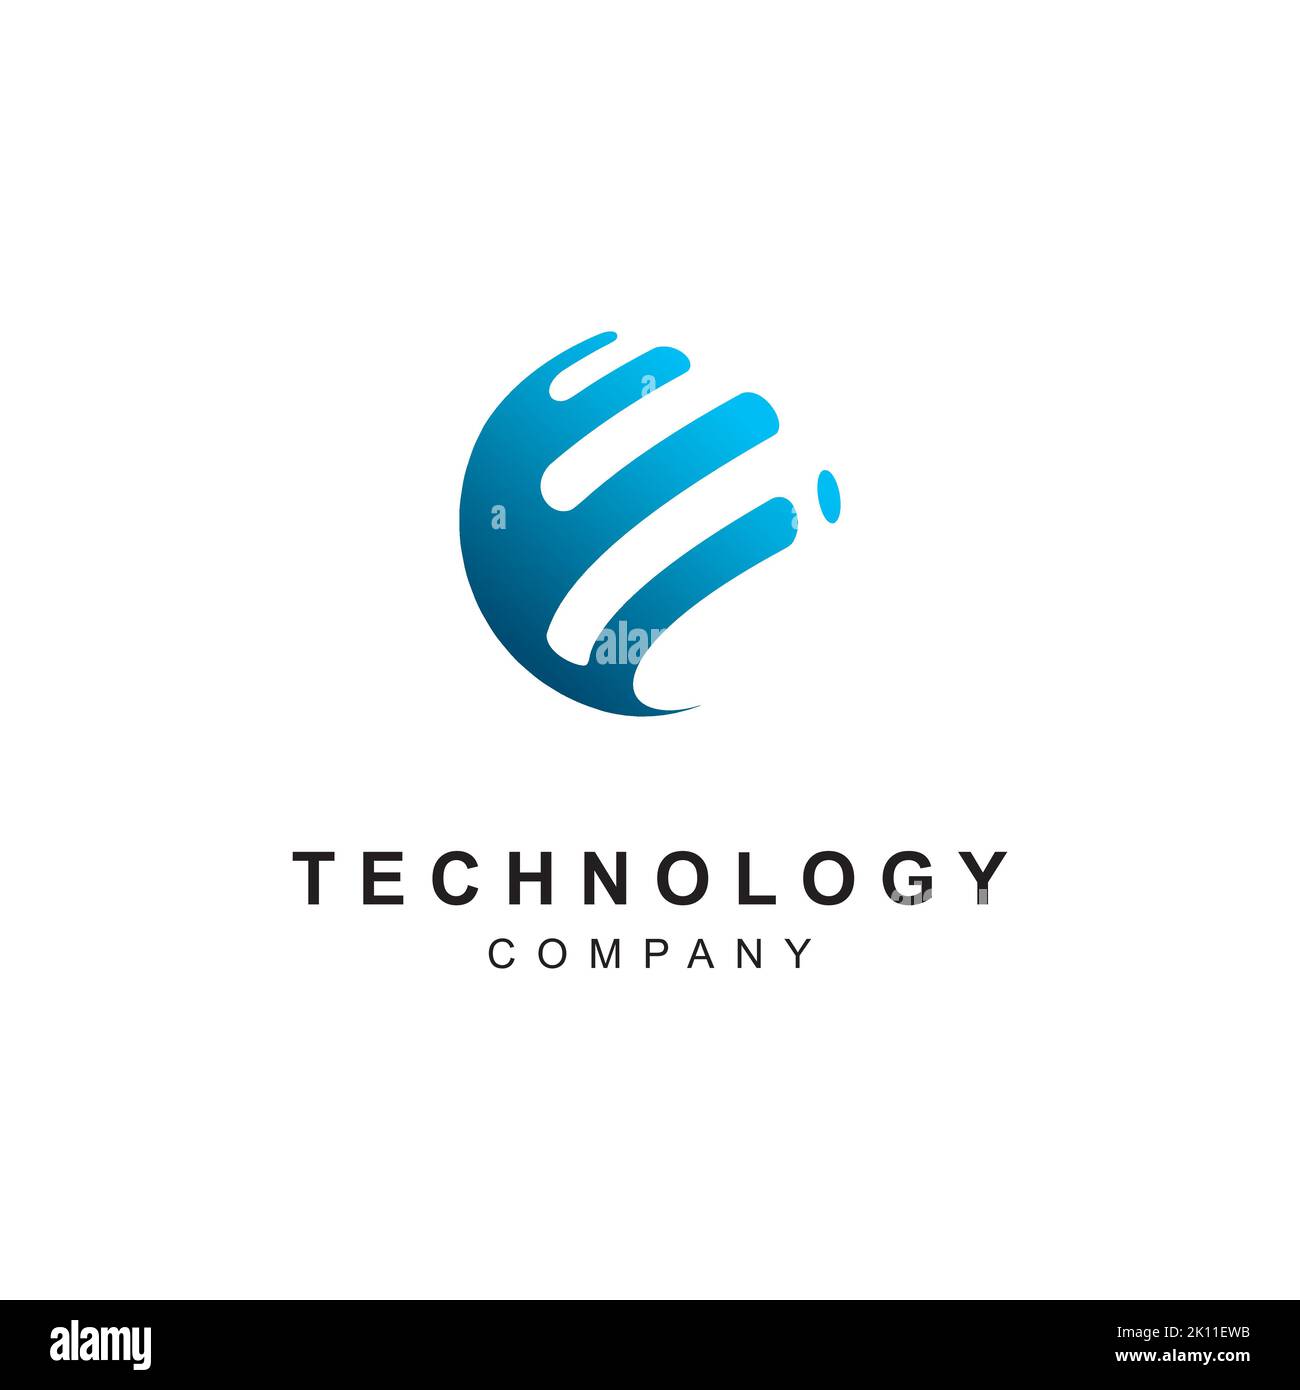 Technology logo design. Abstract tech icon vector template Stock Vector